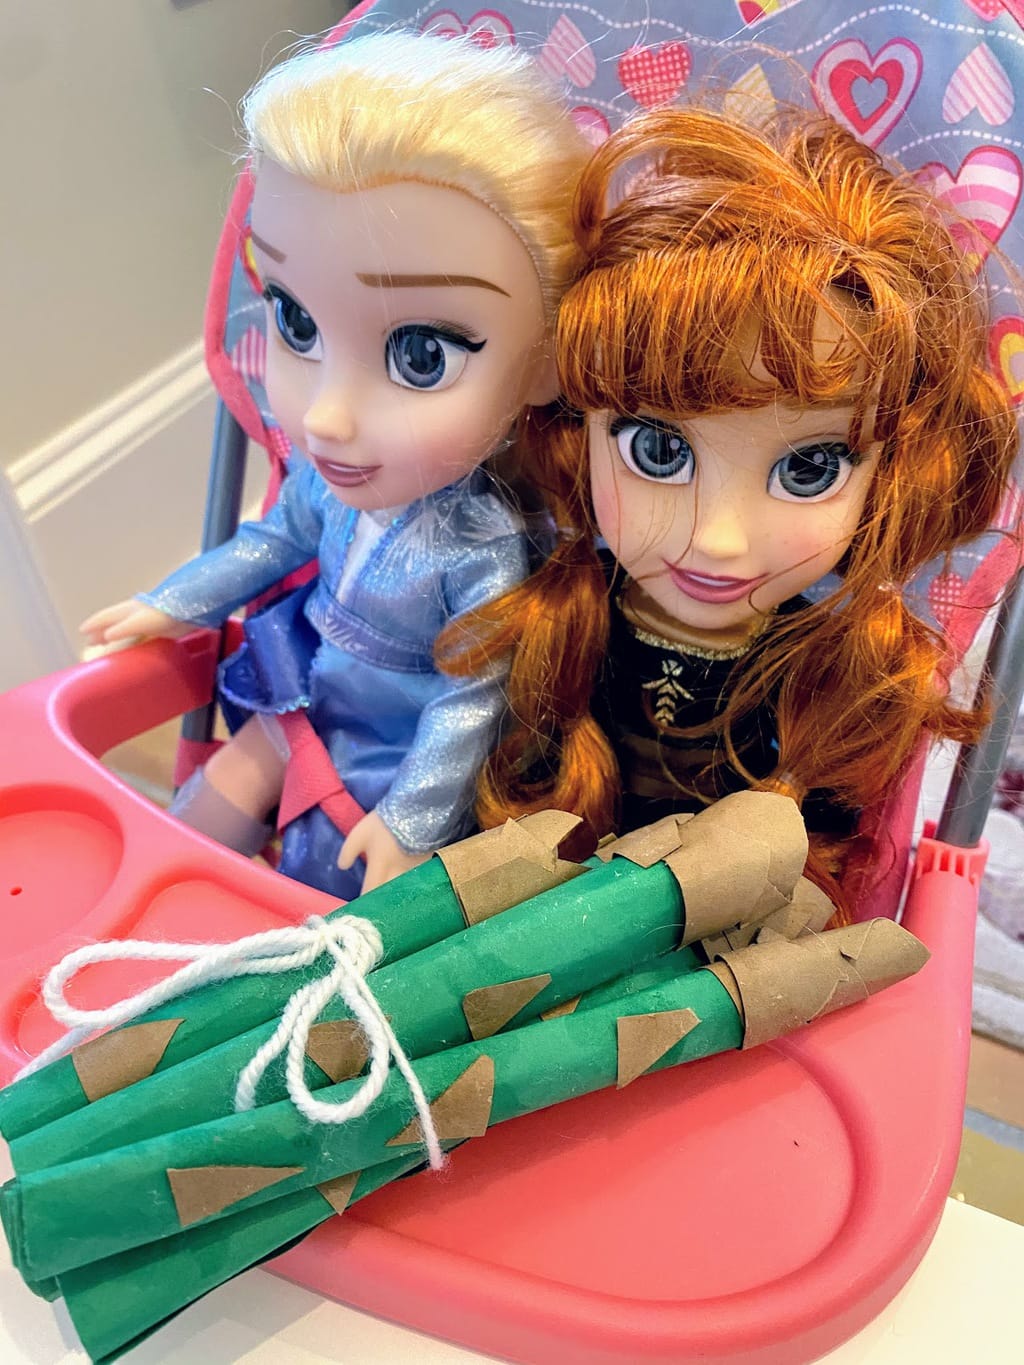 dolls with play food asparagus